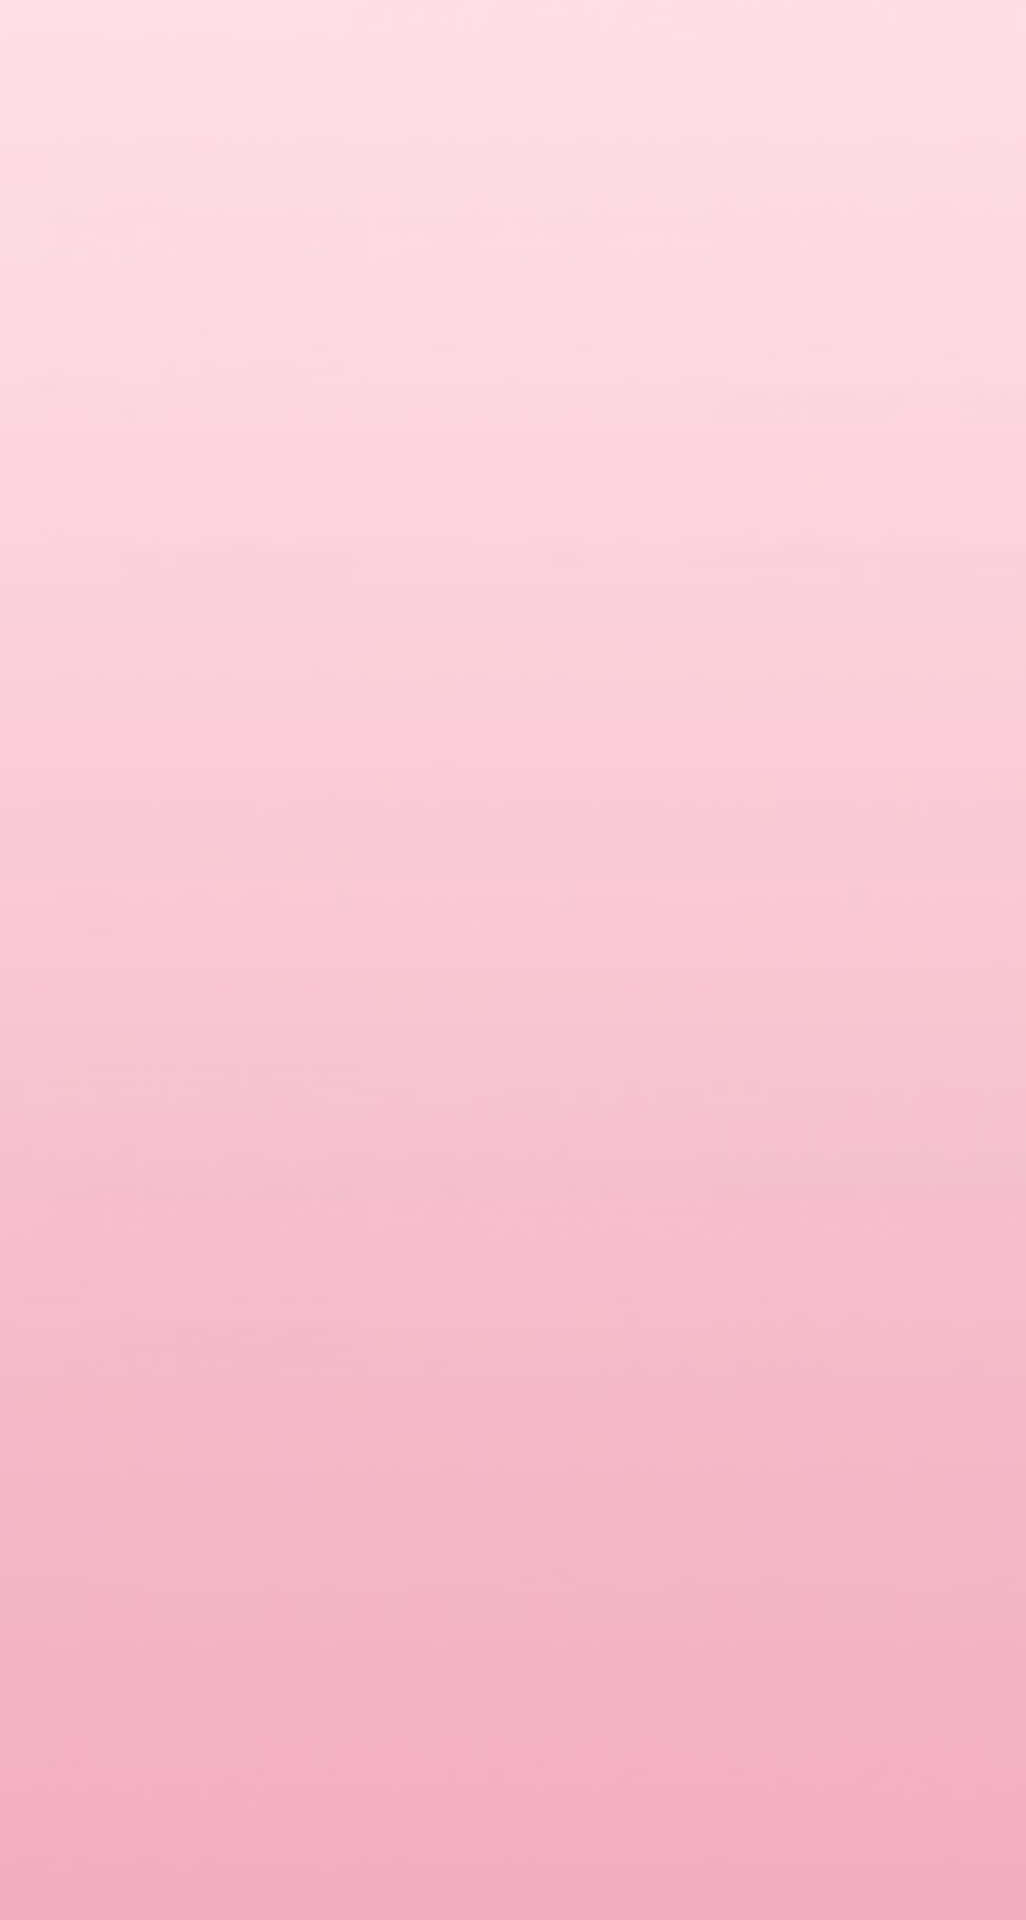 Exquisitofondo Rosa De Tono Sólido. Fondo de pantalla